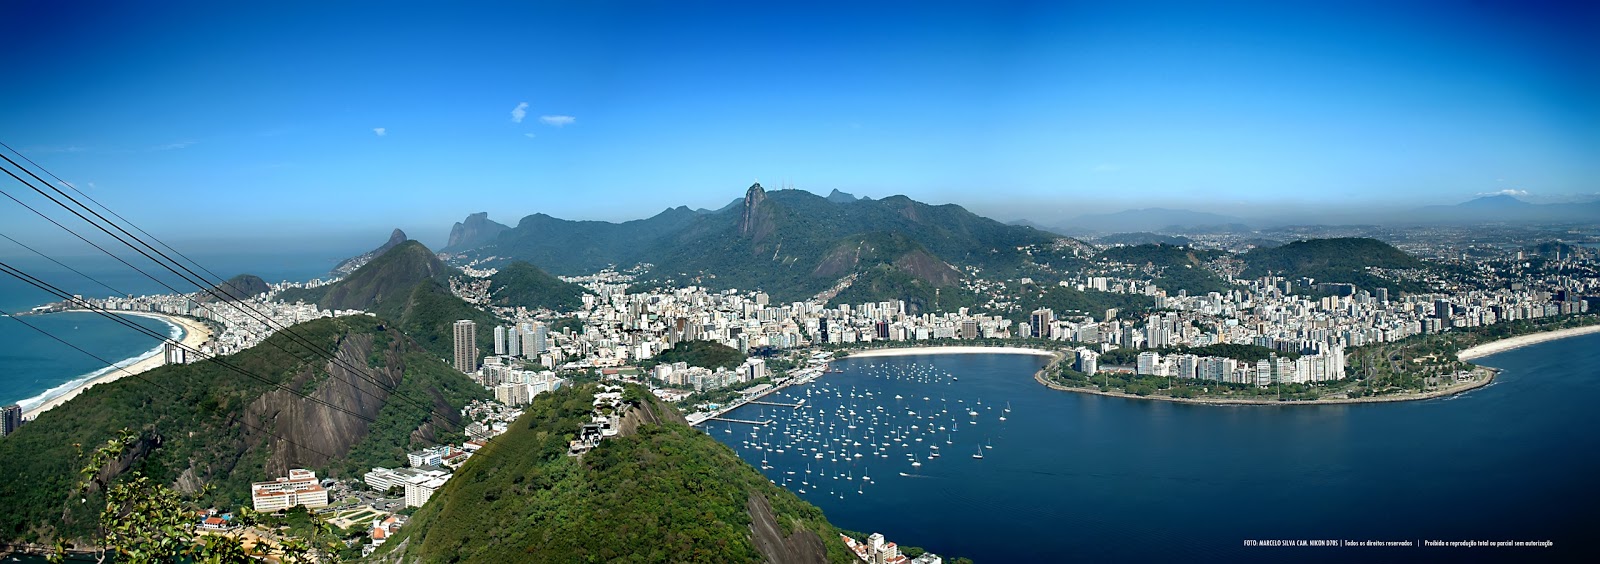 Rio de Janeiro Skyline